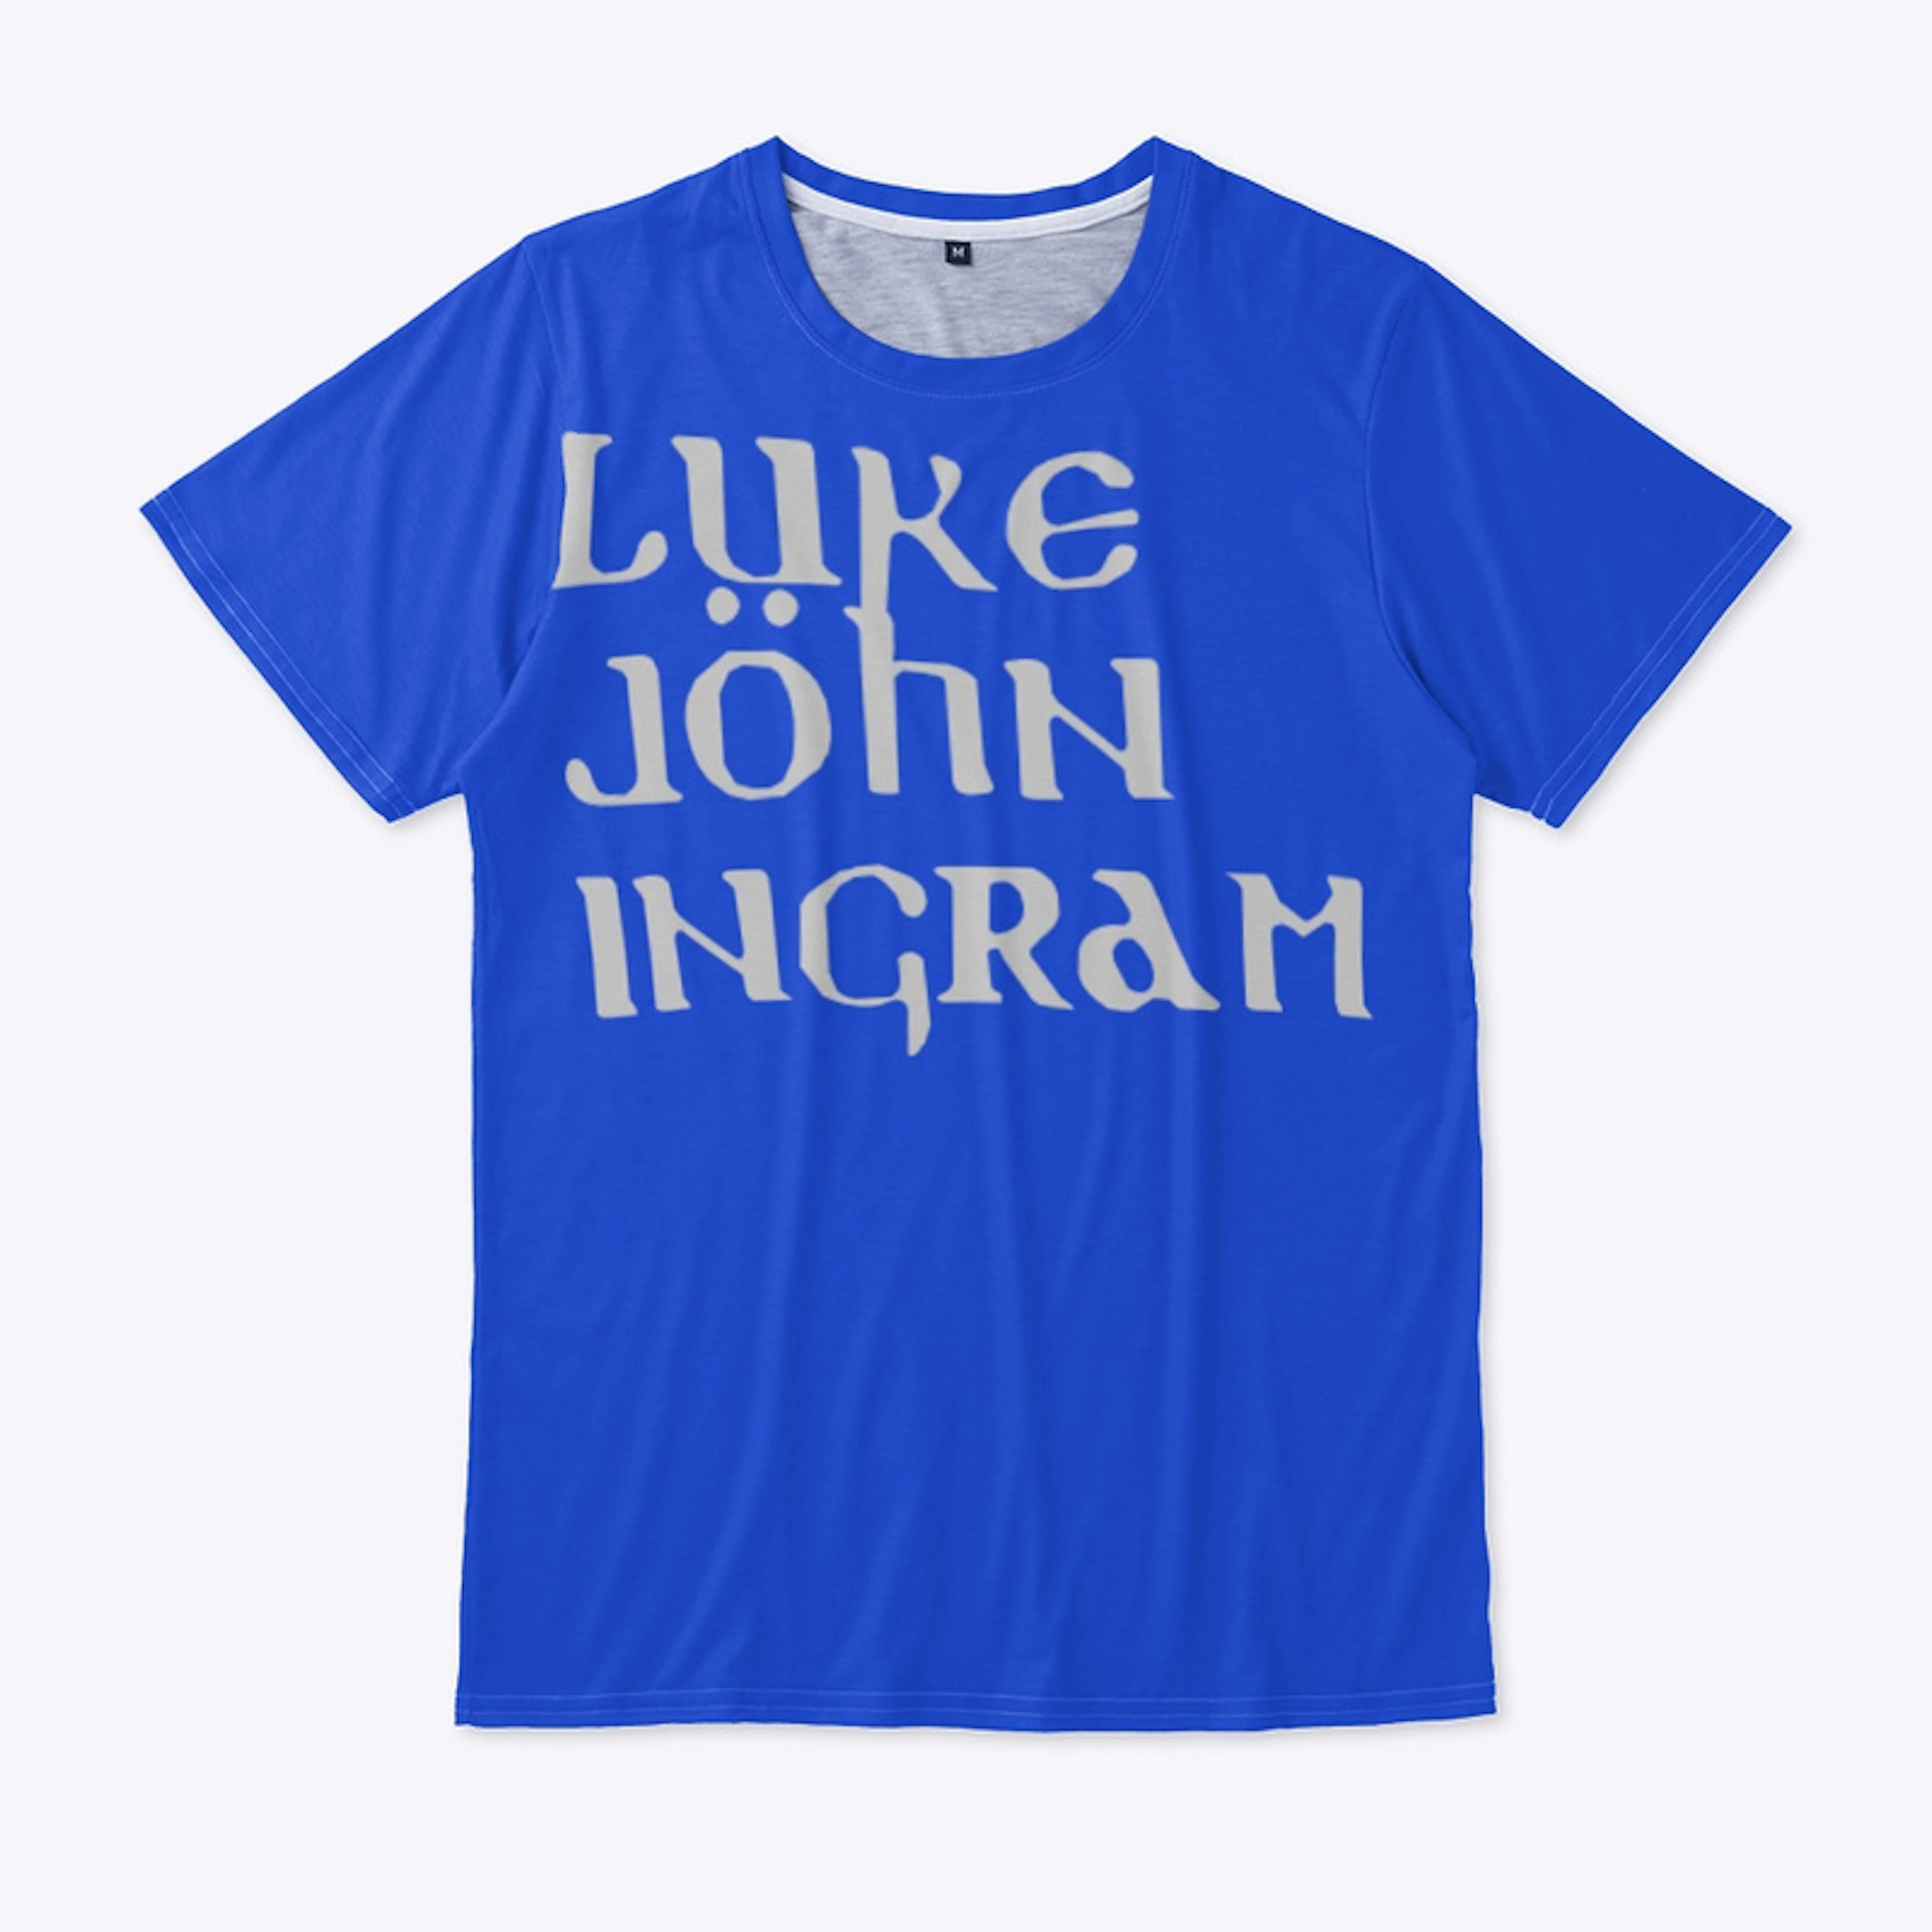 Luke John Ingram Official Merchandise 